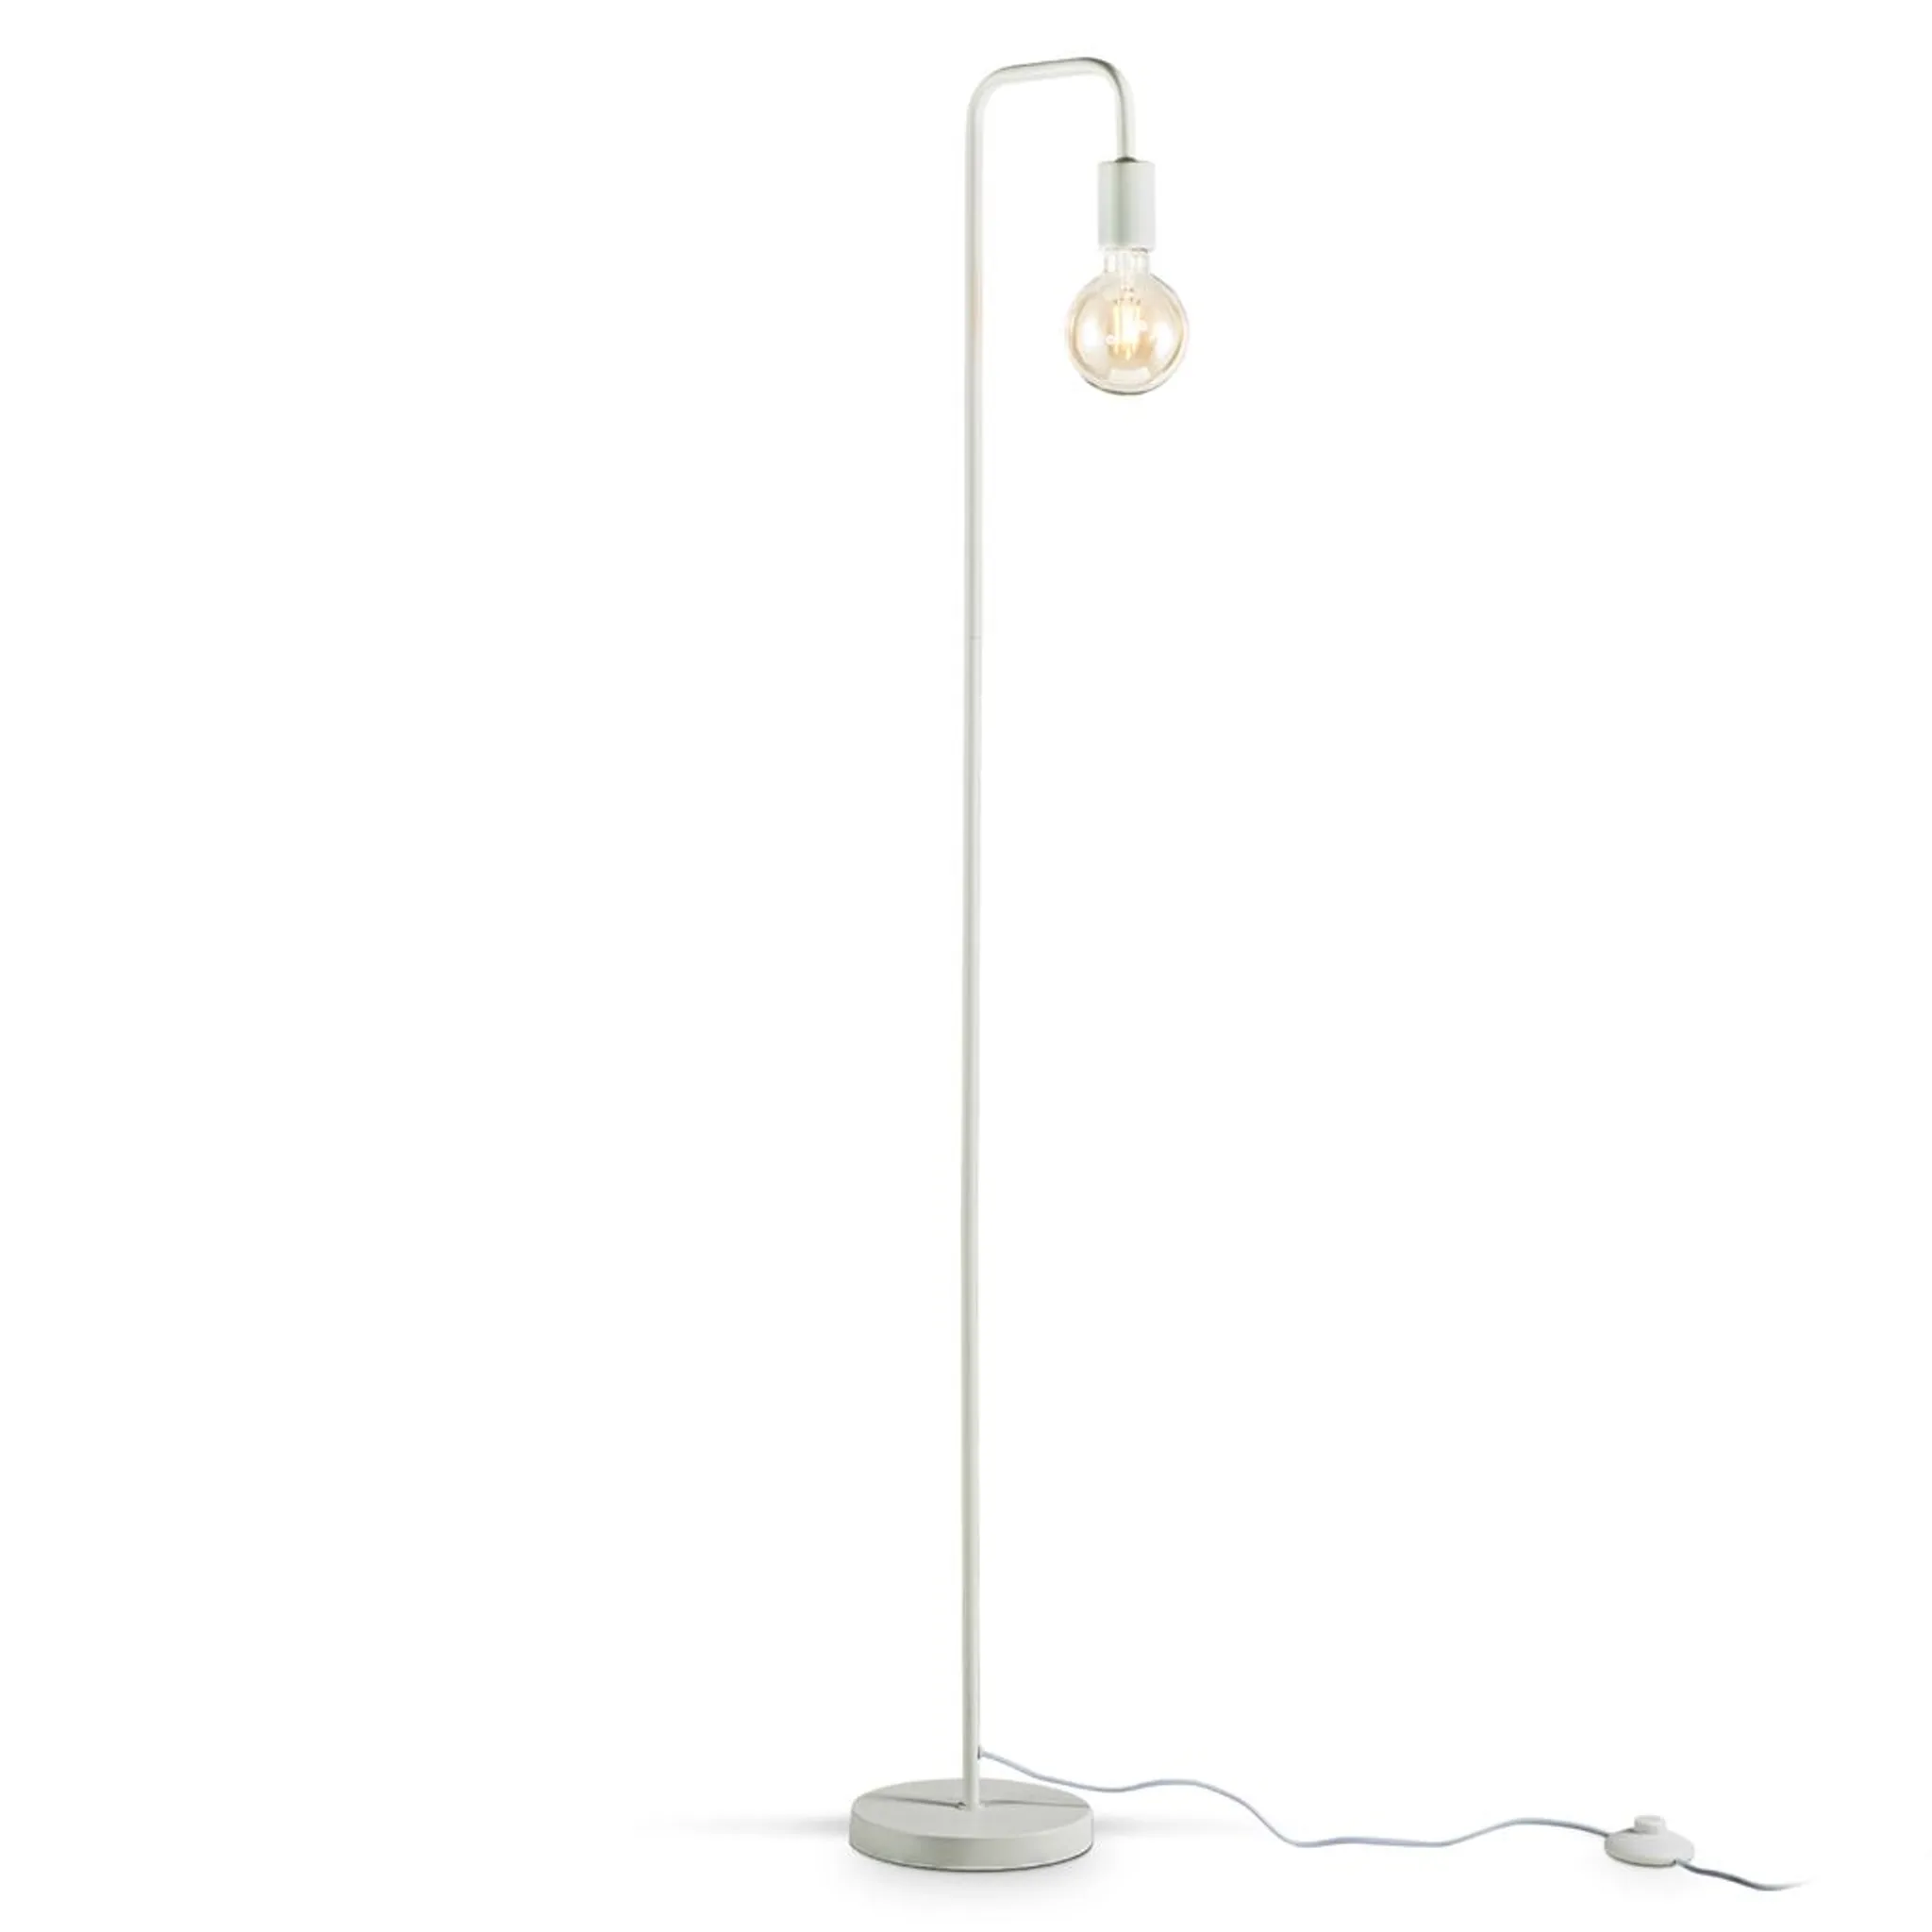 Stehlampe Retro Bogen Weiß Industrie Design Skandinavisch Stehleuchte Metall E27